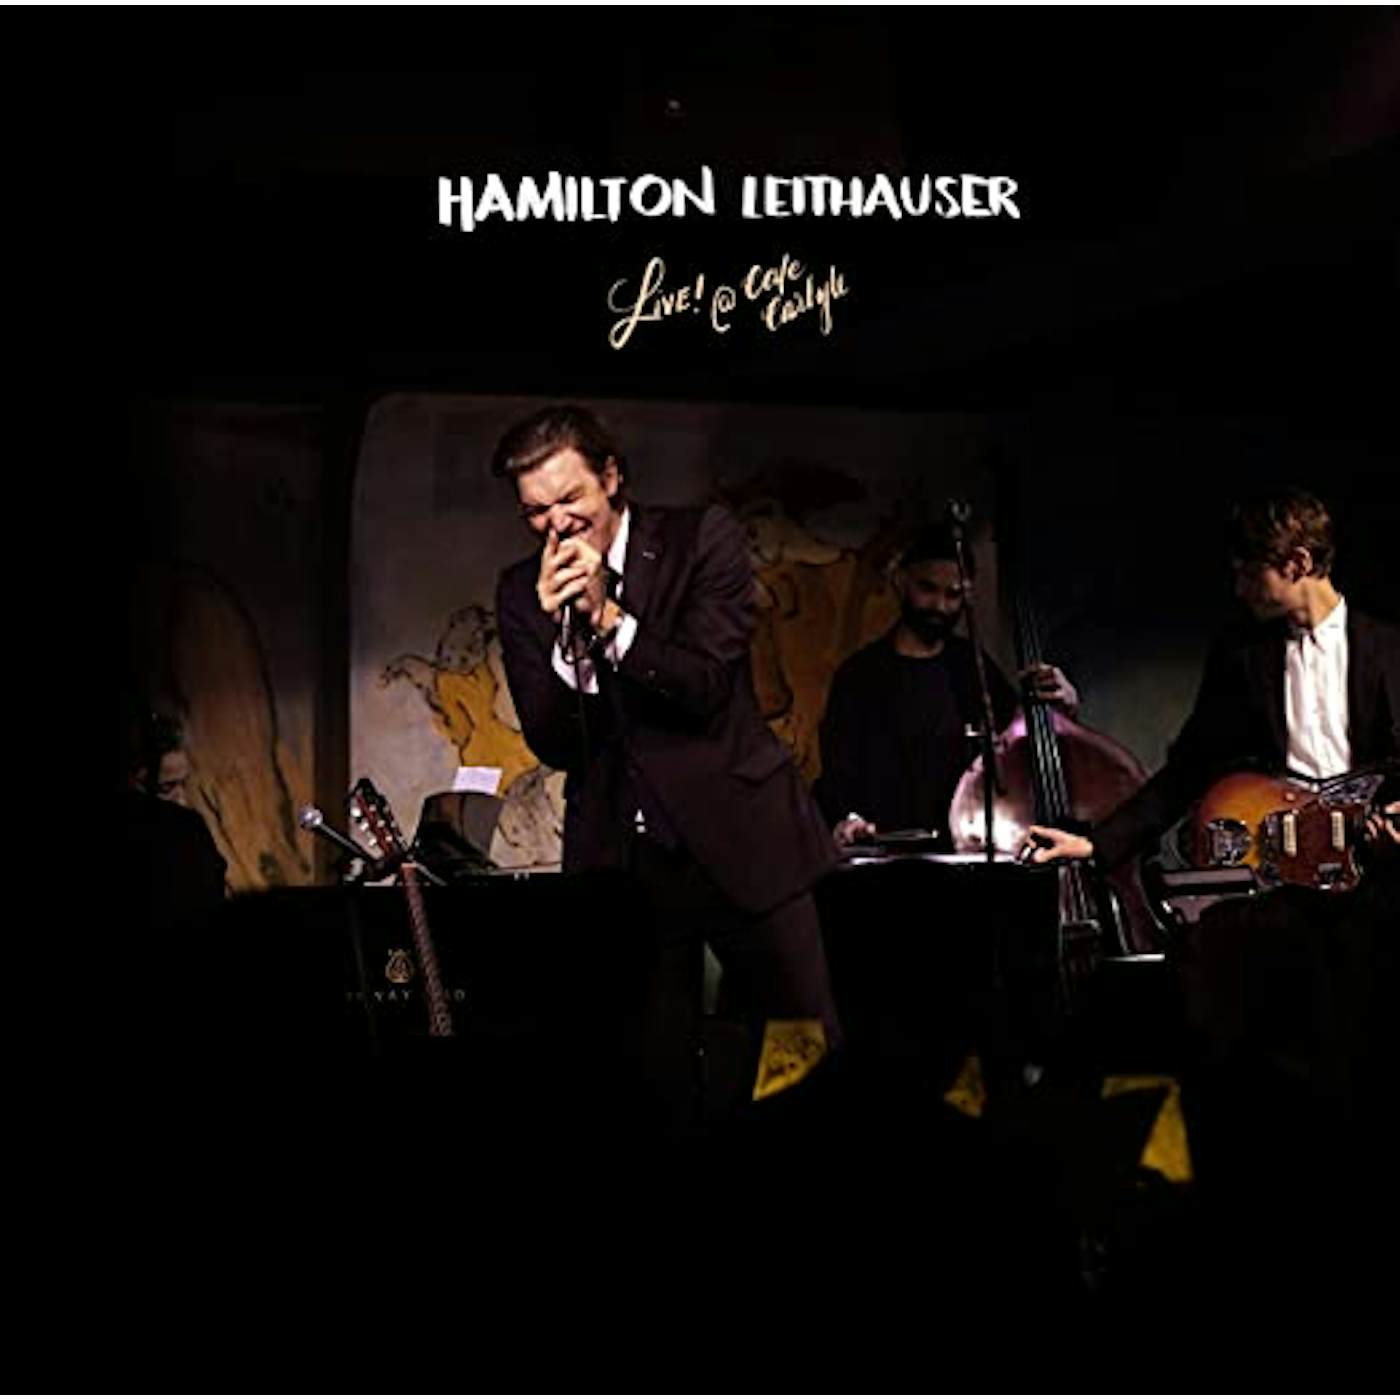 Hamilton Leithauser Live! at Café Carlyle Vinyl Record